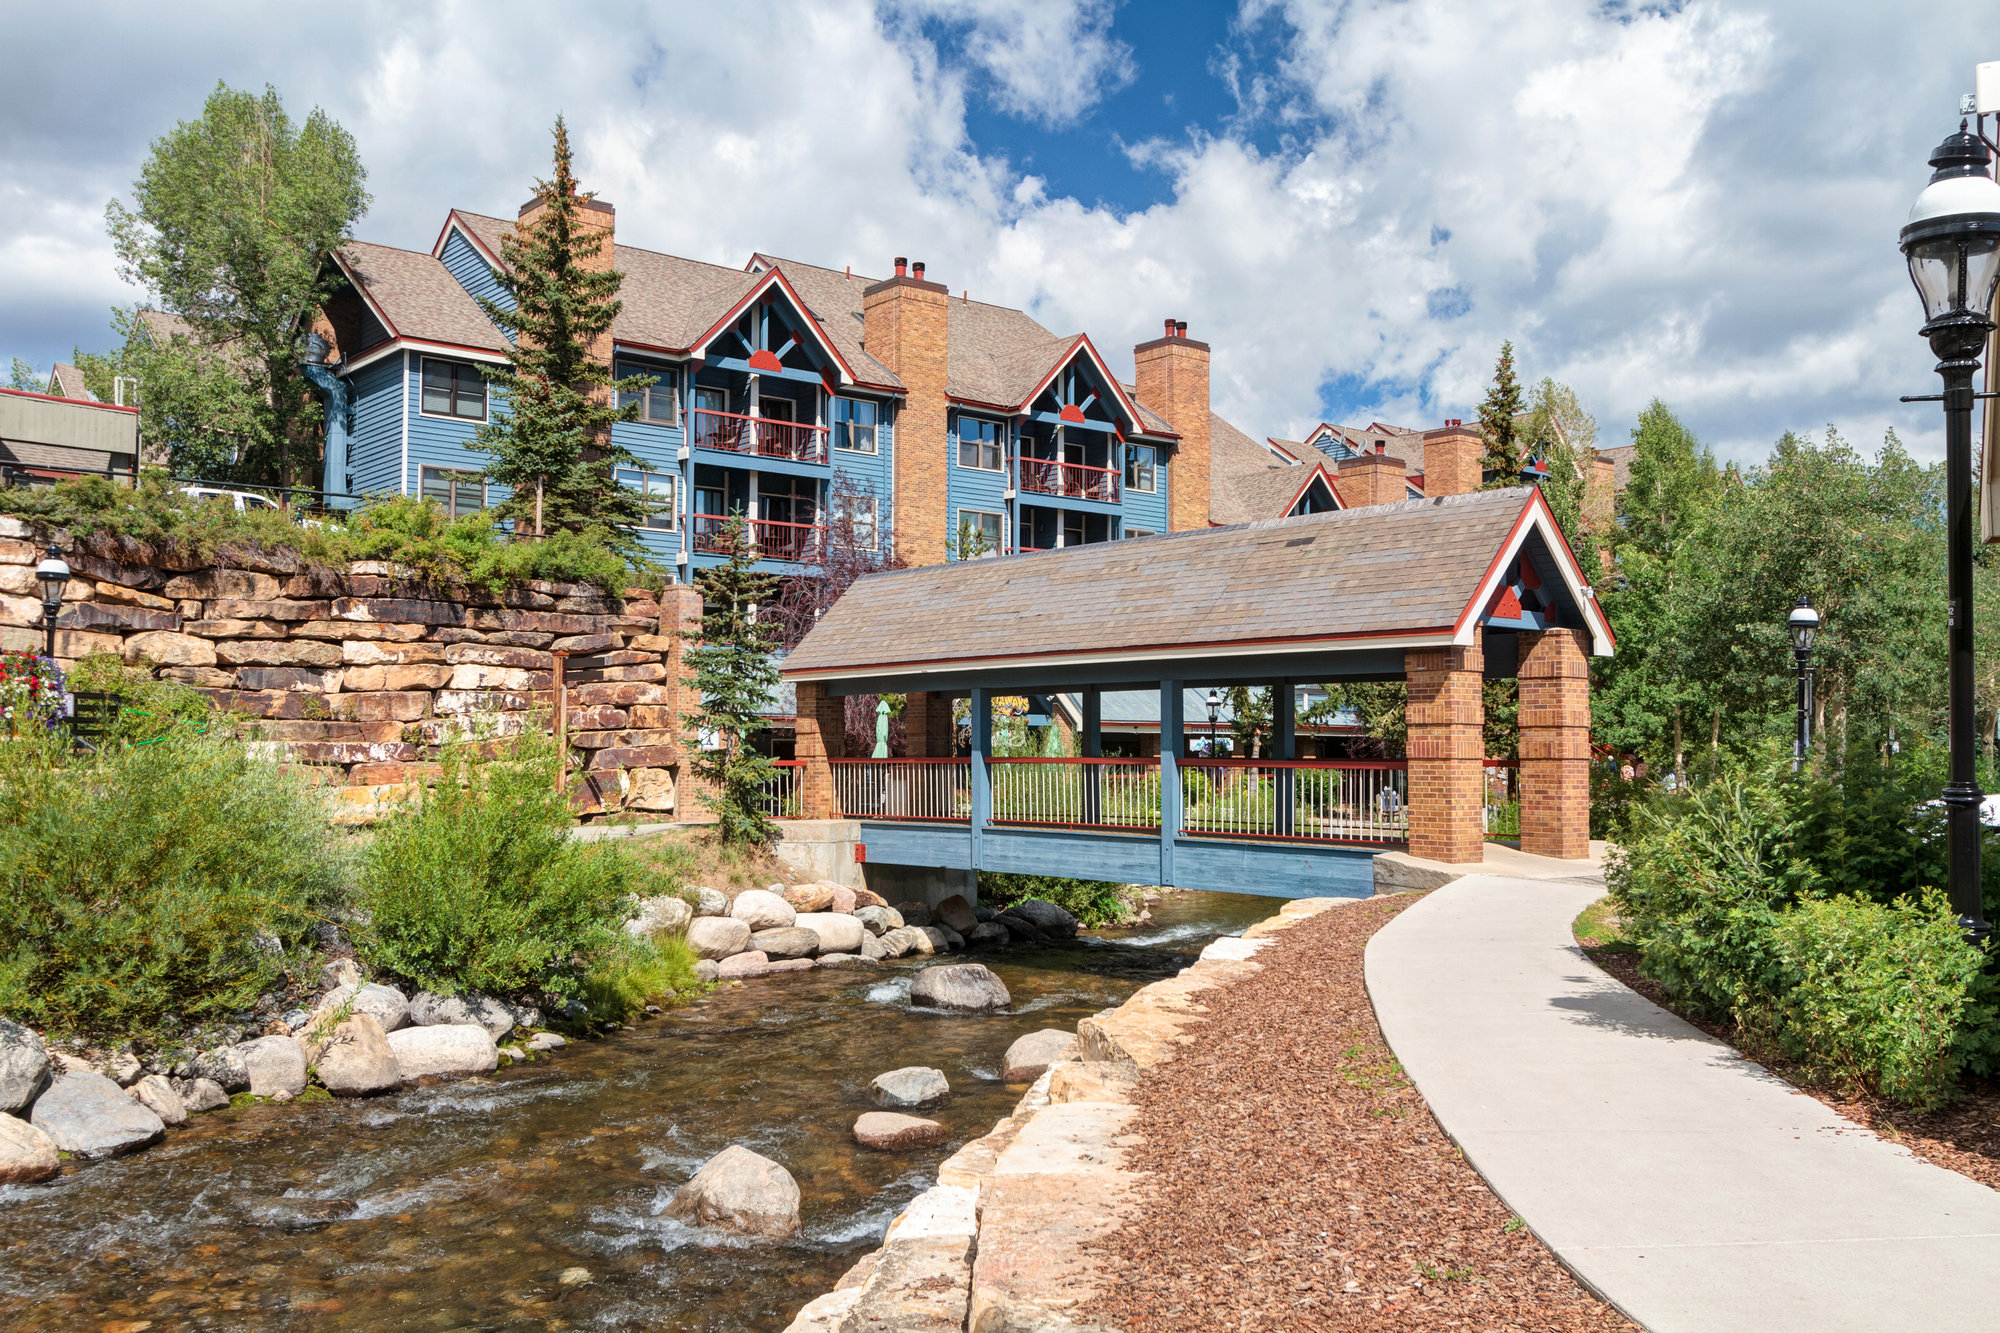 River Mountain Lodge Condo for Sale in Breckenridge, CO listed by Breckenridge Associates Real Estate